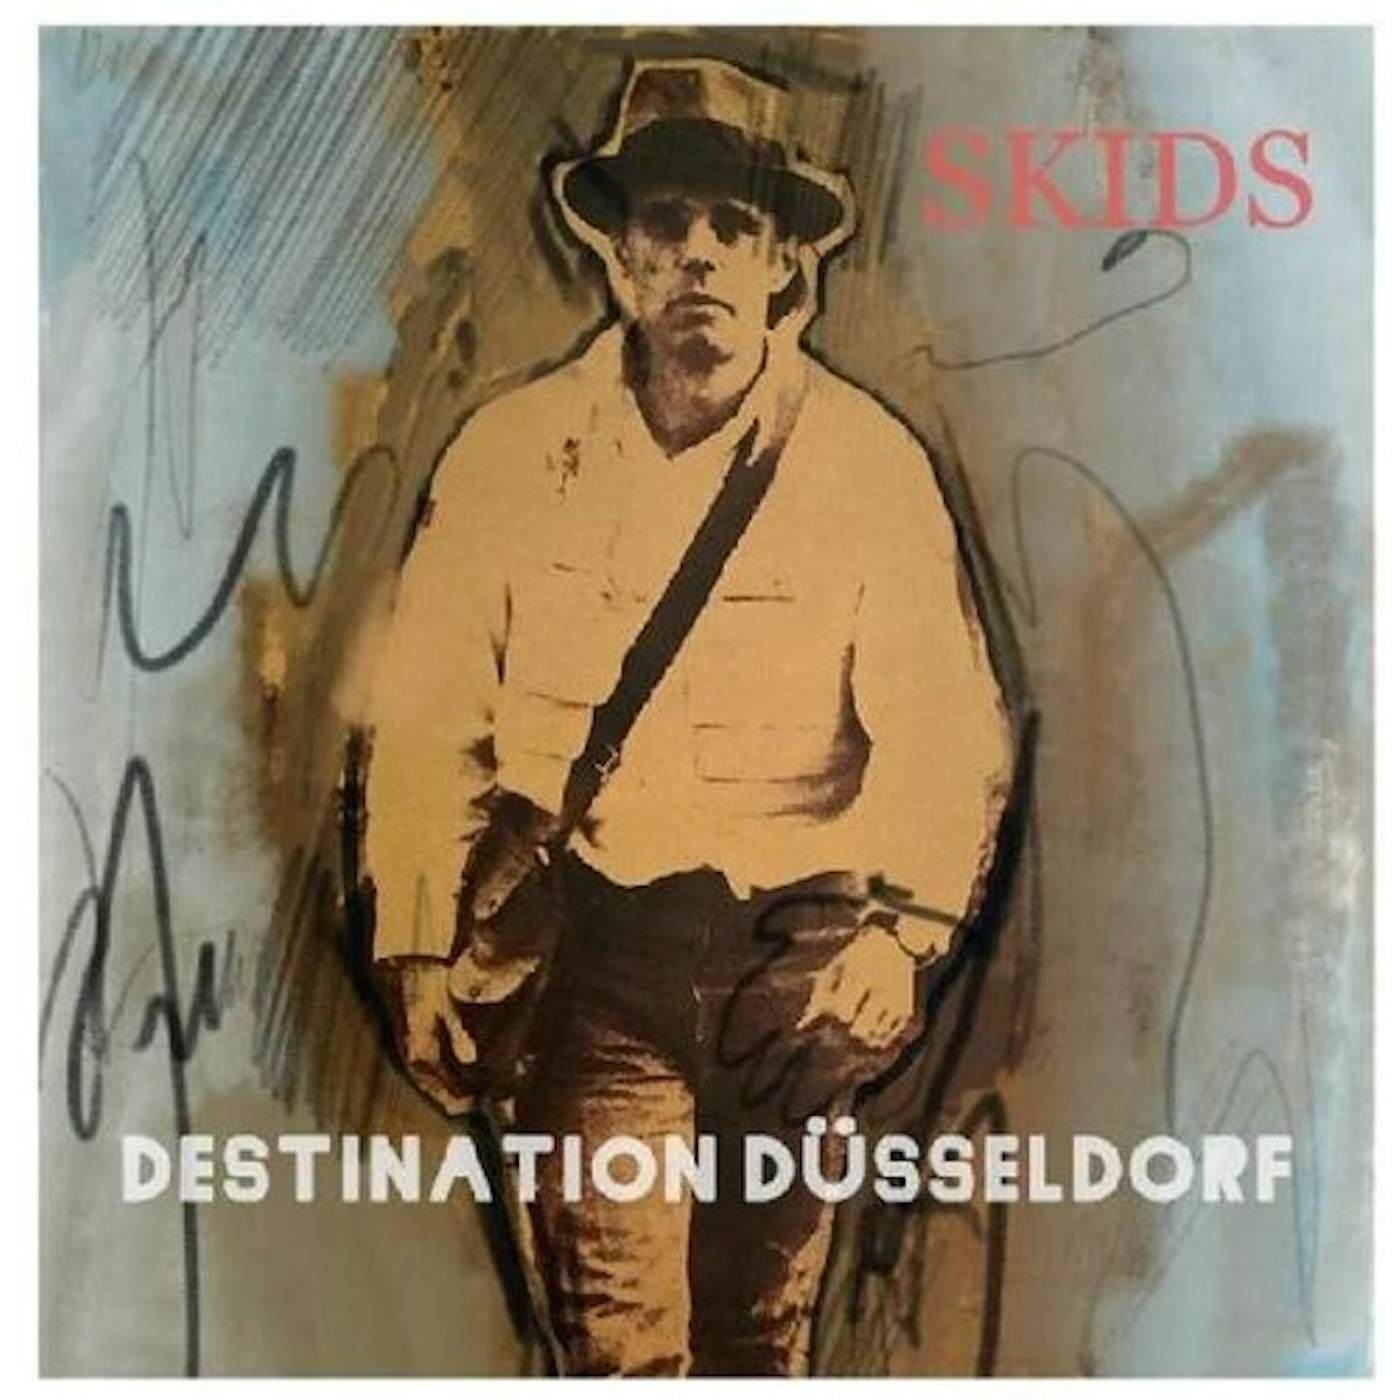 Skids DESTINATION DUSSELDORF Vinyl Record